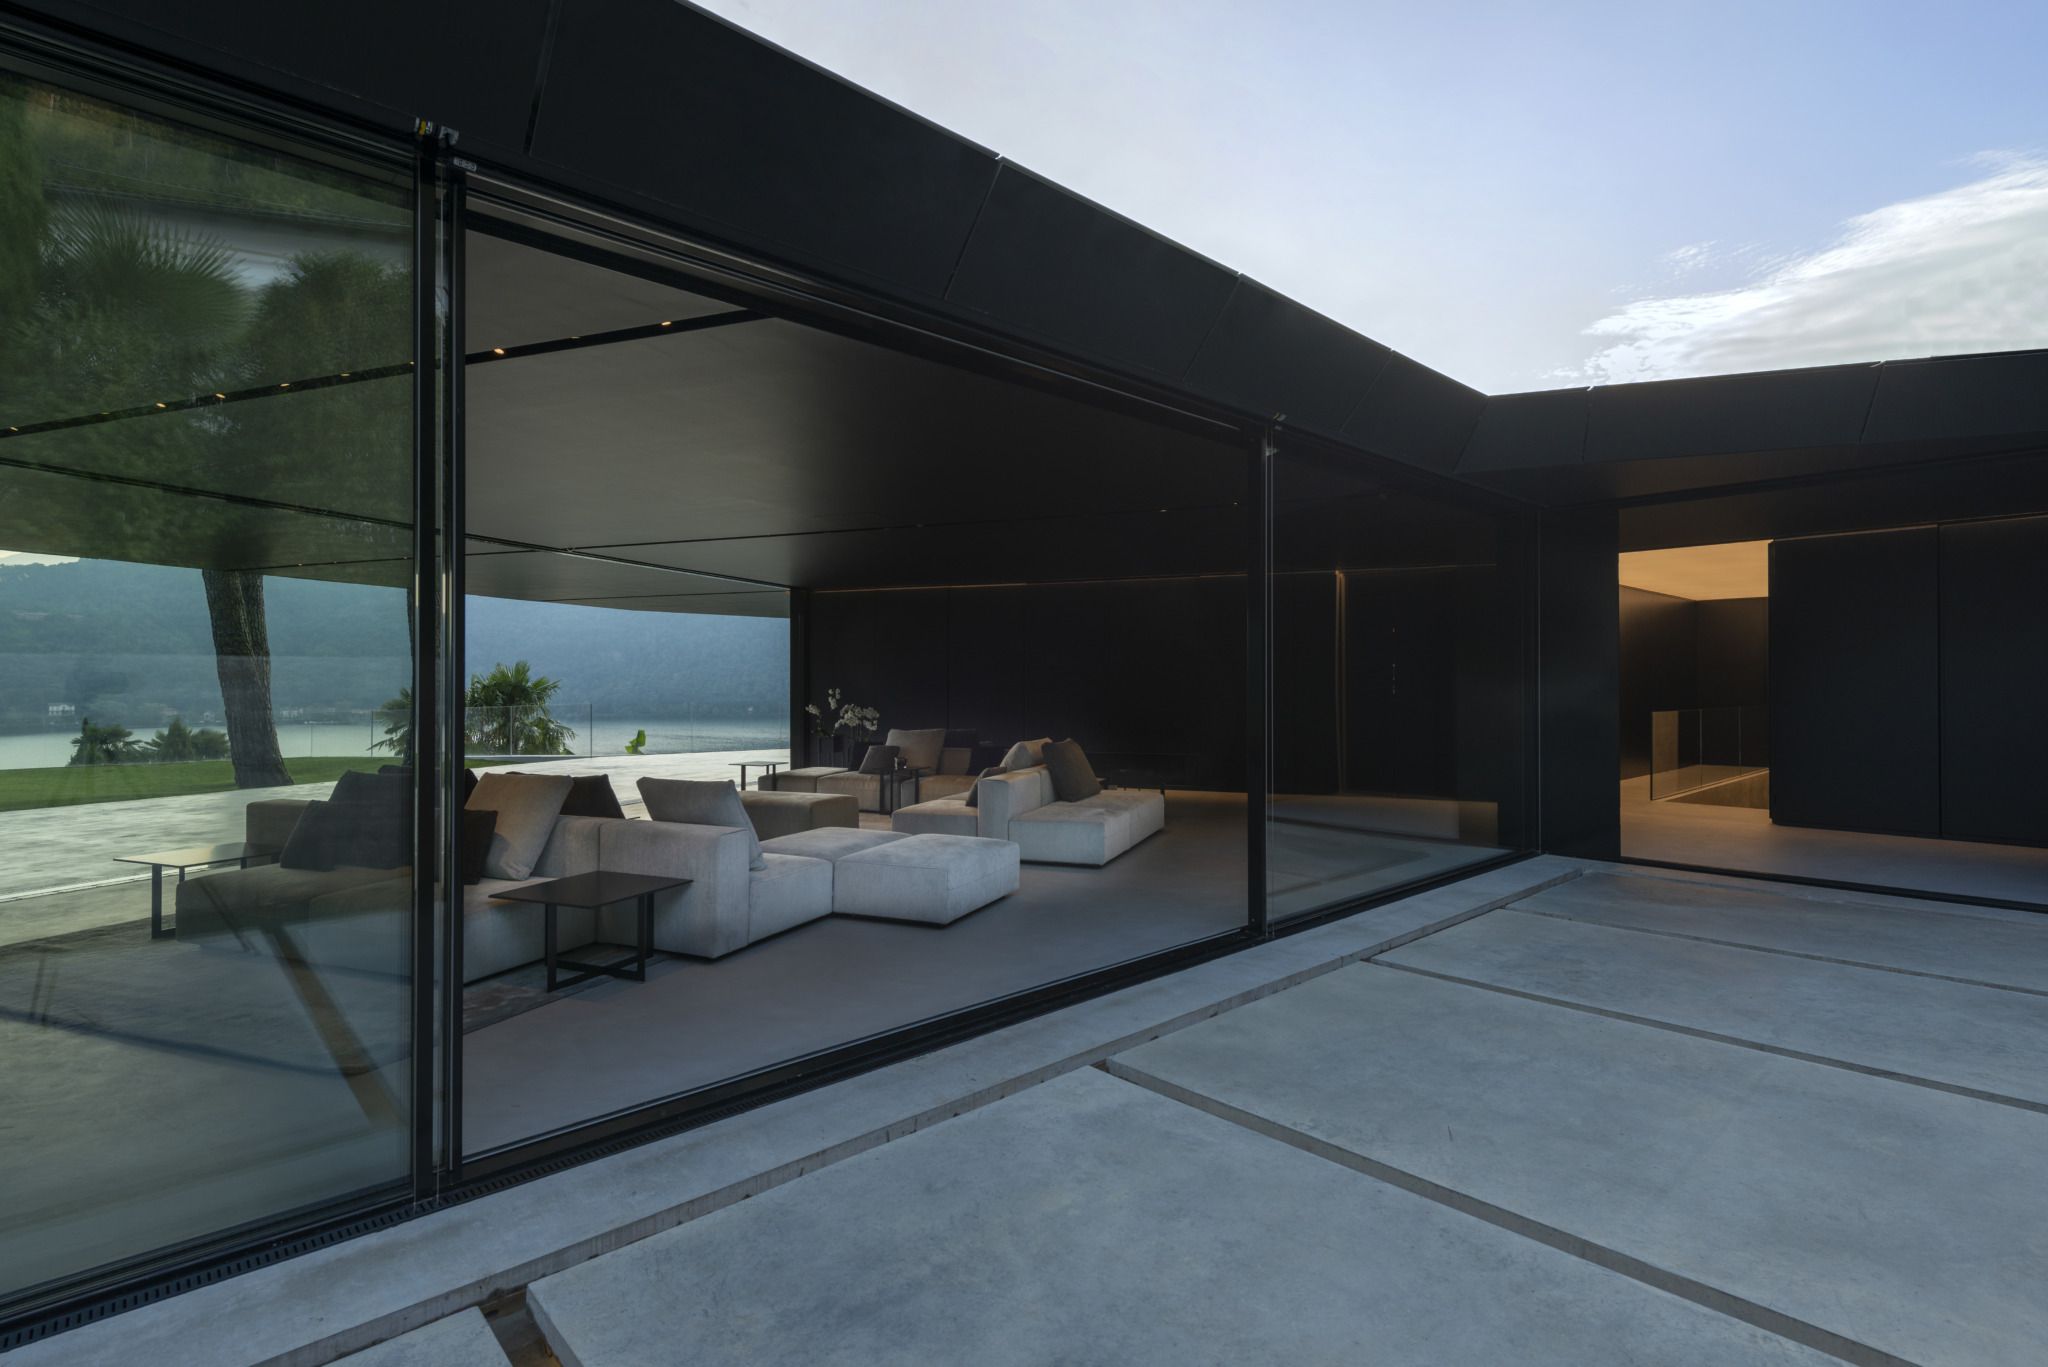 Villa in Morcote, project by ZMB architettura SAGL, furniture by Molteni&C